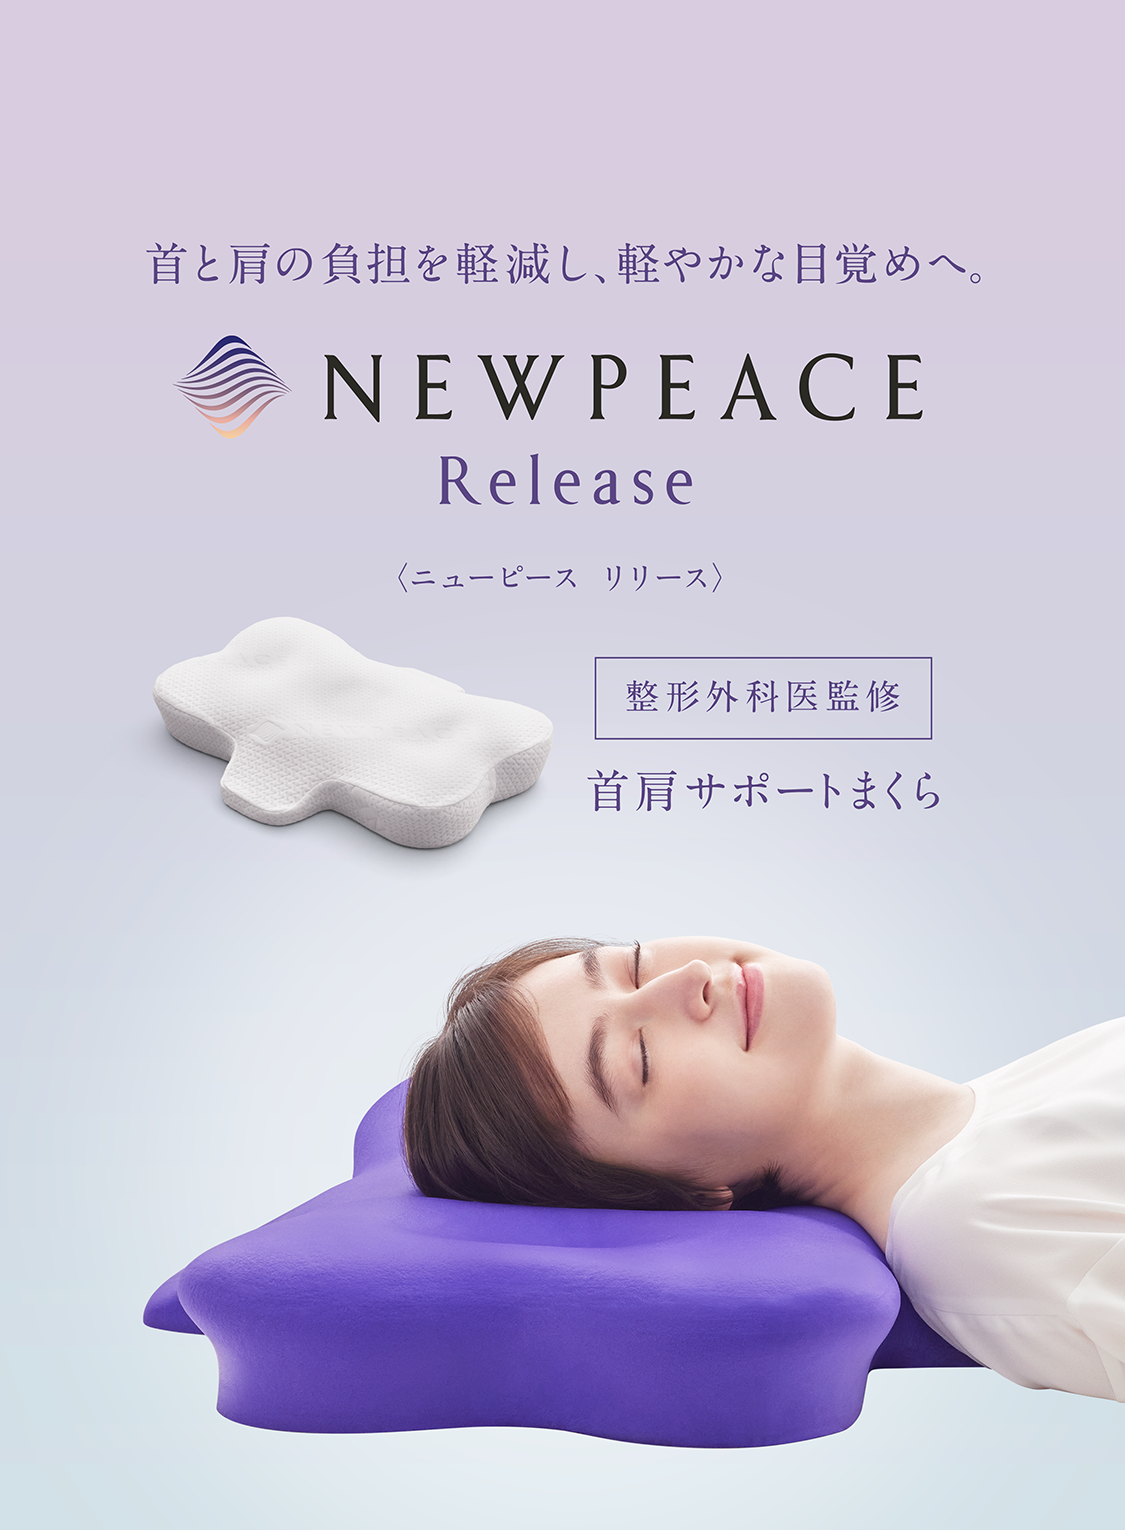 NEWPEACE Pillow -Release-｜NEWPEACE（ニューピース）公式サイト